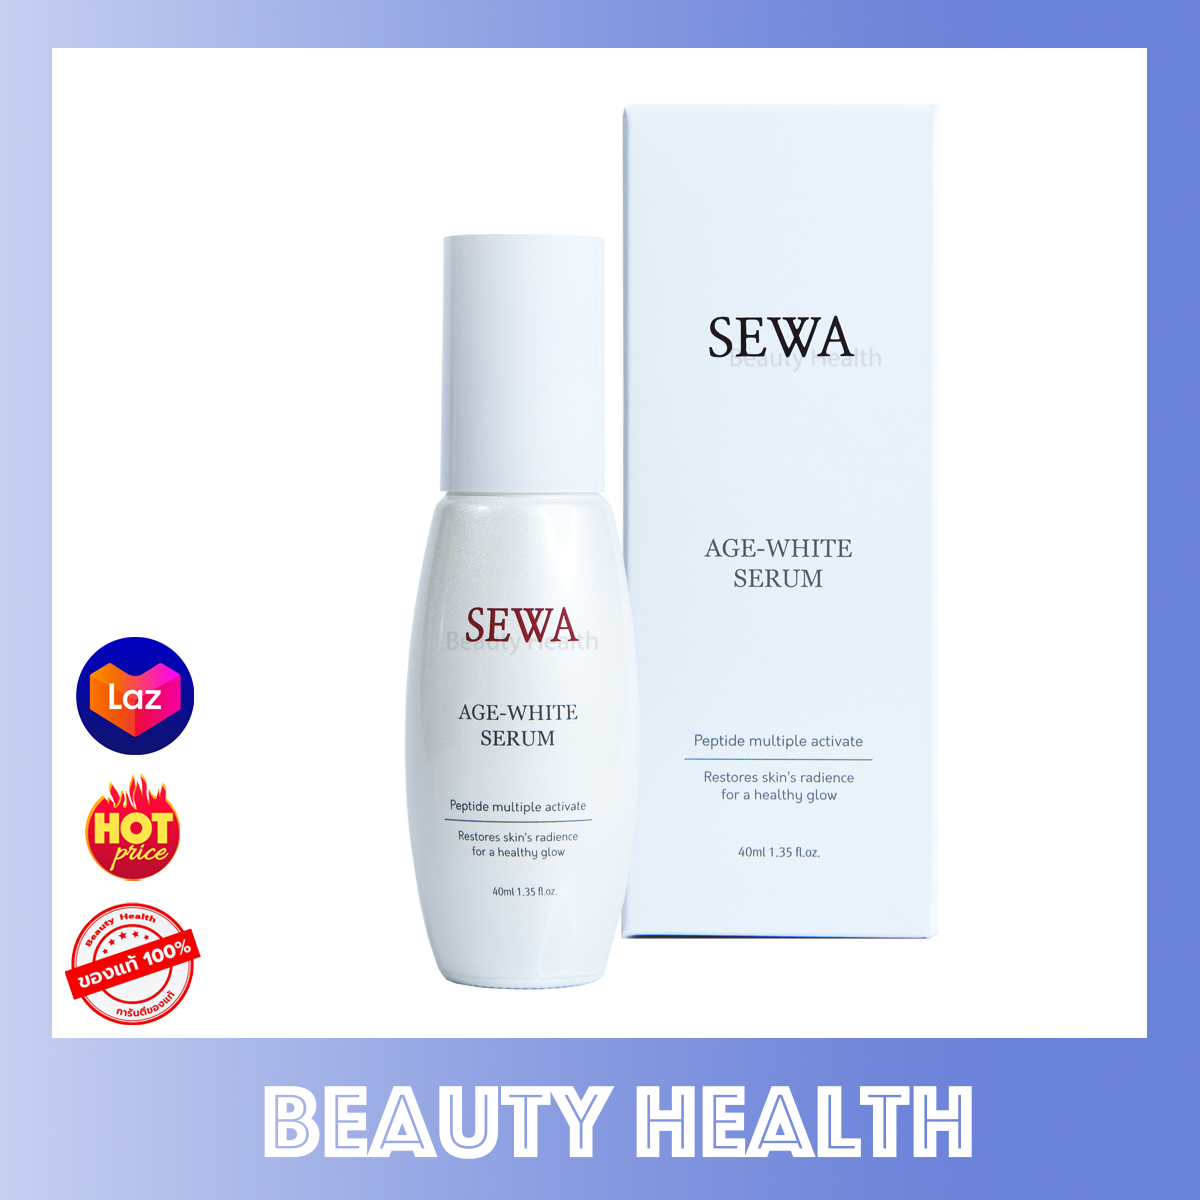 ราคา Sewa Age White Serum เซรั่มเข้มข้นสูตรผิวเปล่งประกาย กระจ่างใส คืนความอ่อนเยาว์ (40 ml. x 1 ขวด)